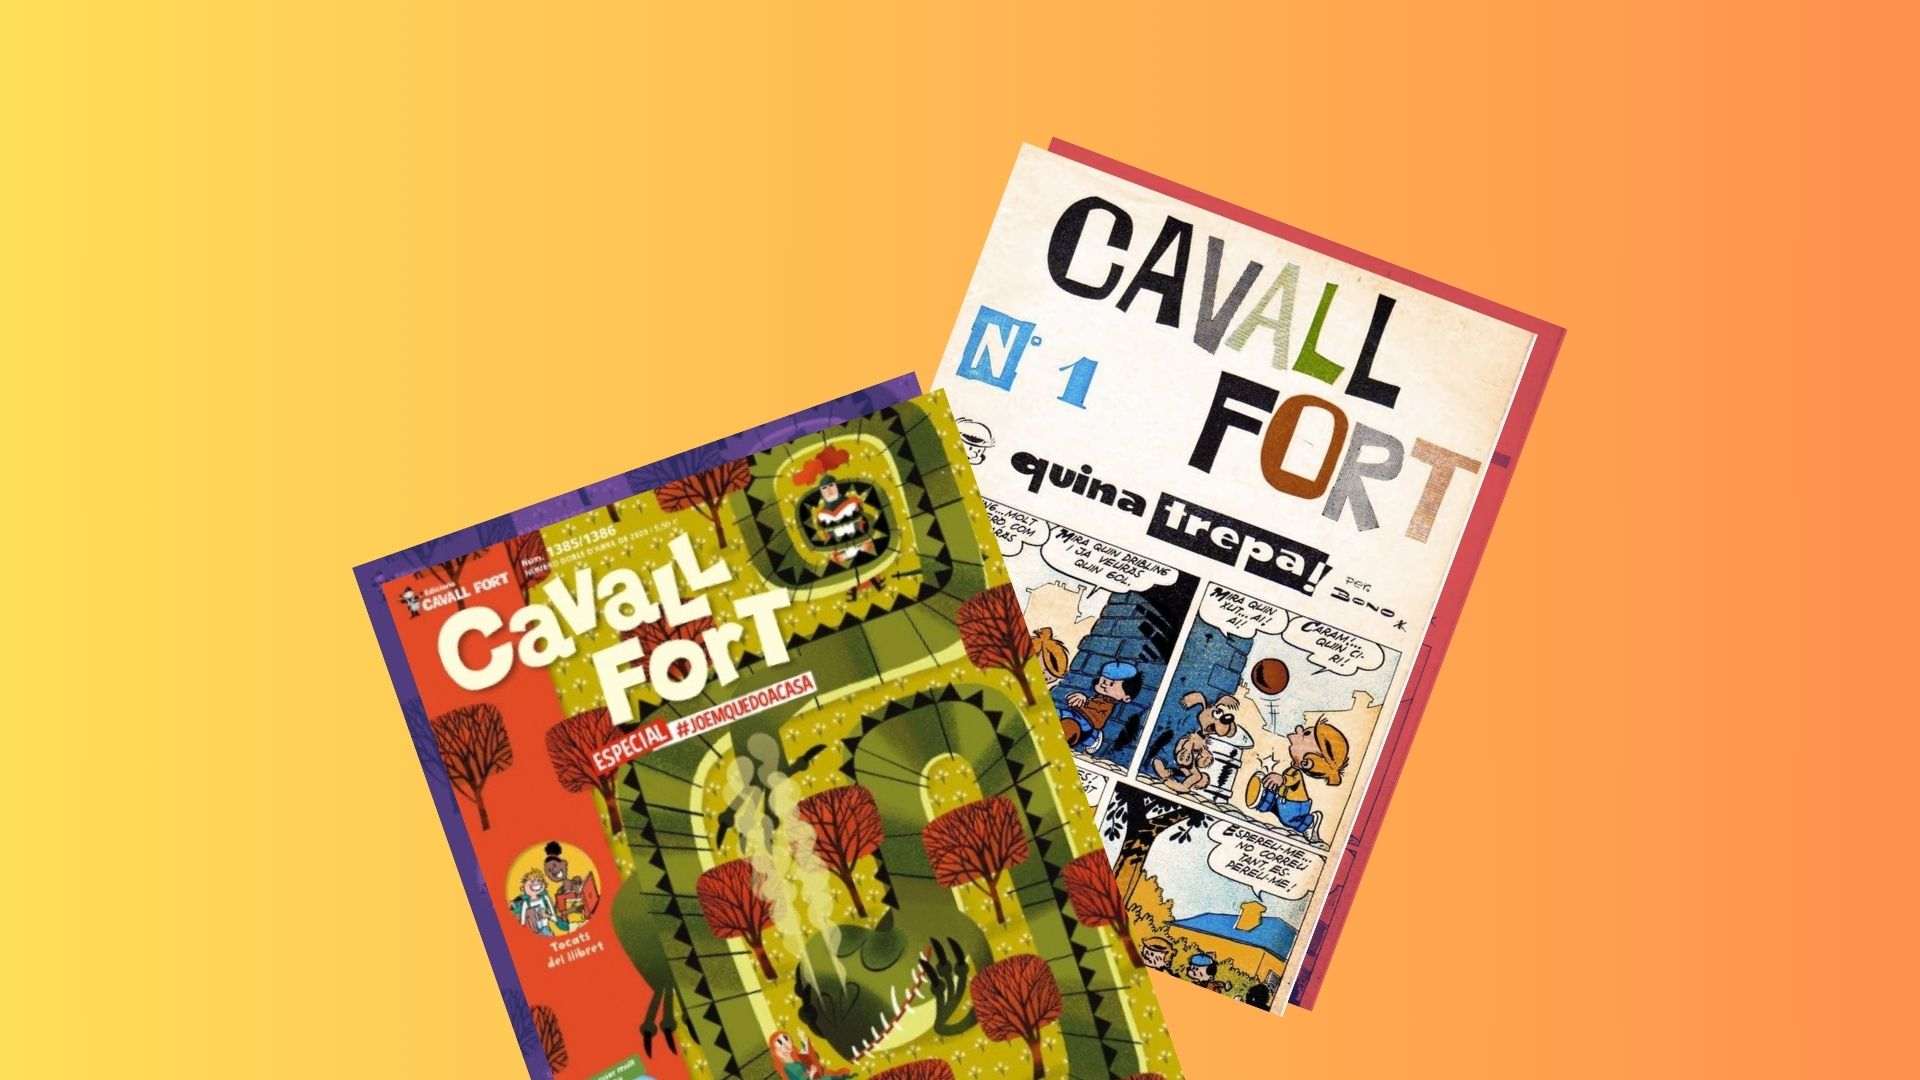 Cavall Fort recibe el Premi de Comunicació Muriel Casals de Òmnium Cultural